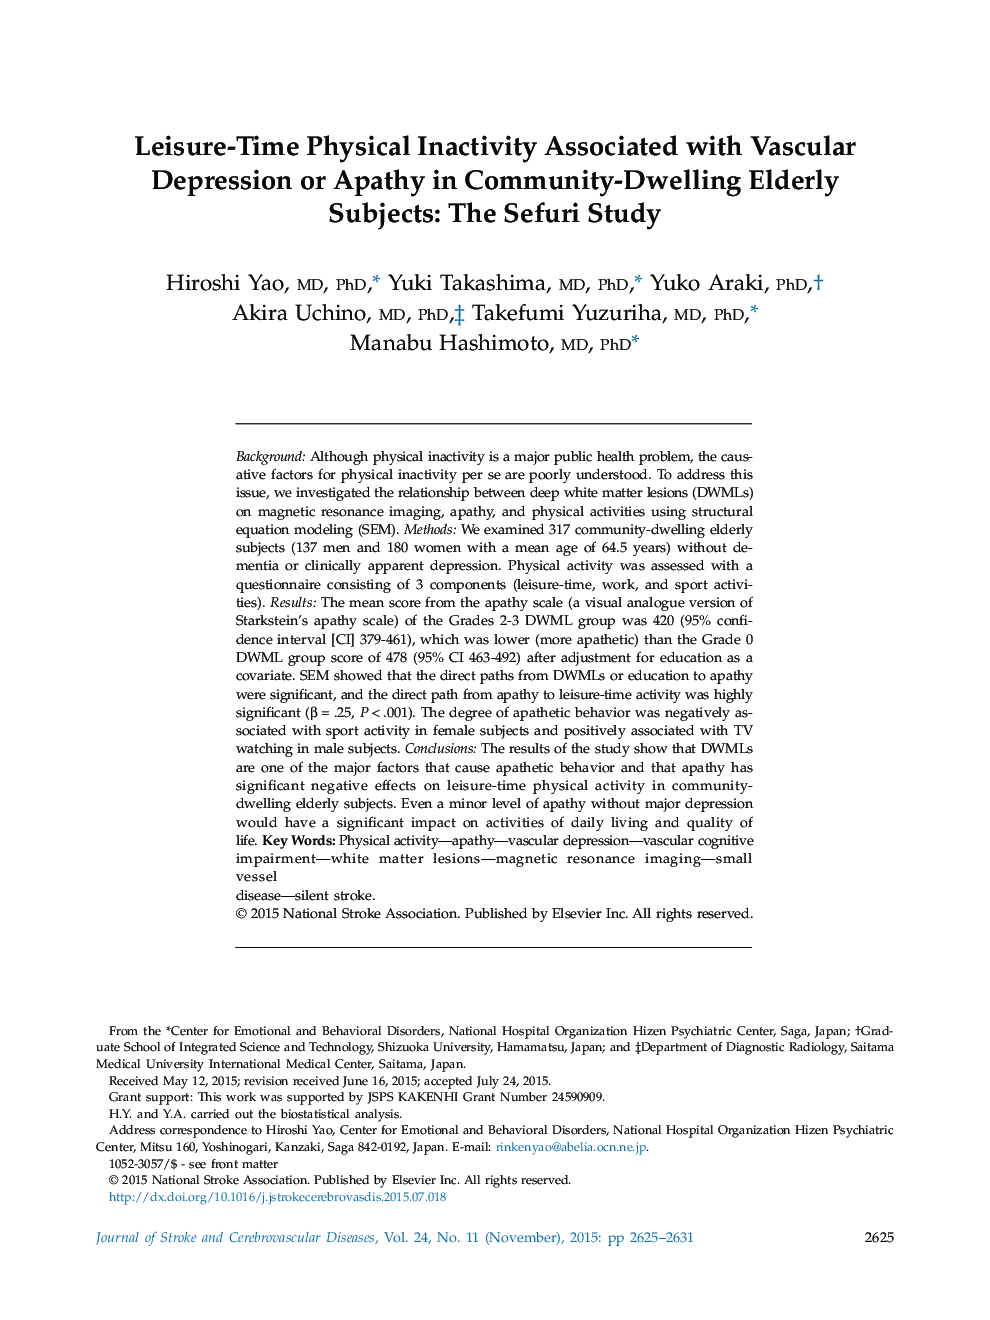 بی اختیاری فیزیکی در اوقات فراغت همراه با افسردگی عروقی یا بی تفاوتی در جامعه مسکن افراد سالخورده: مطالعه سیفوری 